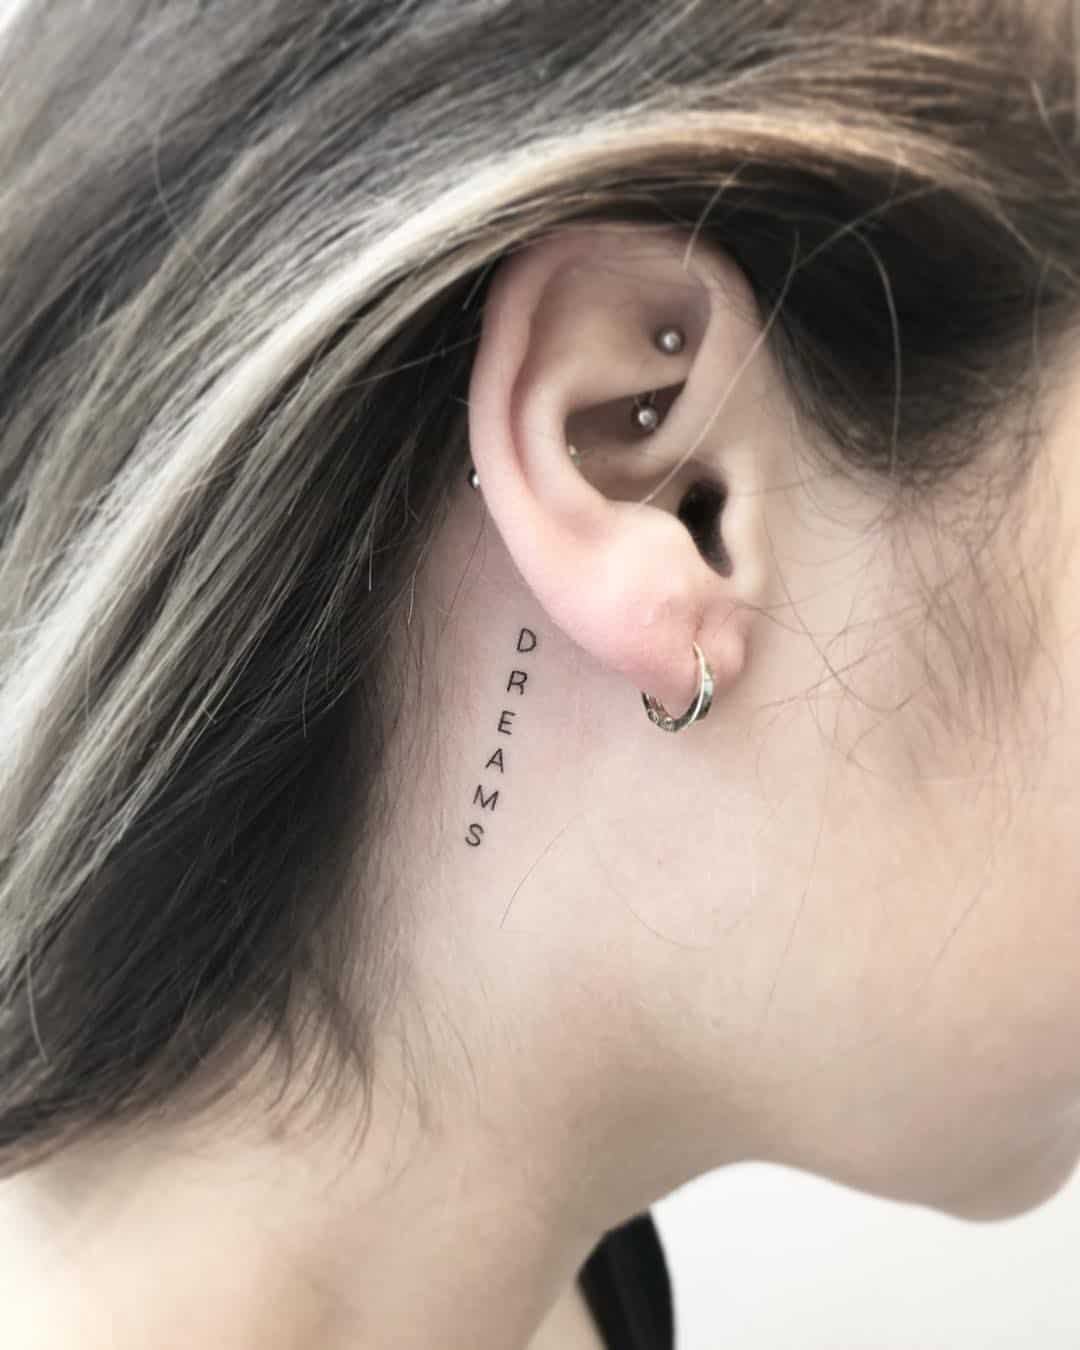 Tattoo beside ear